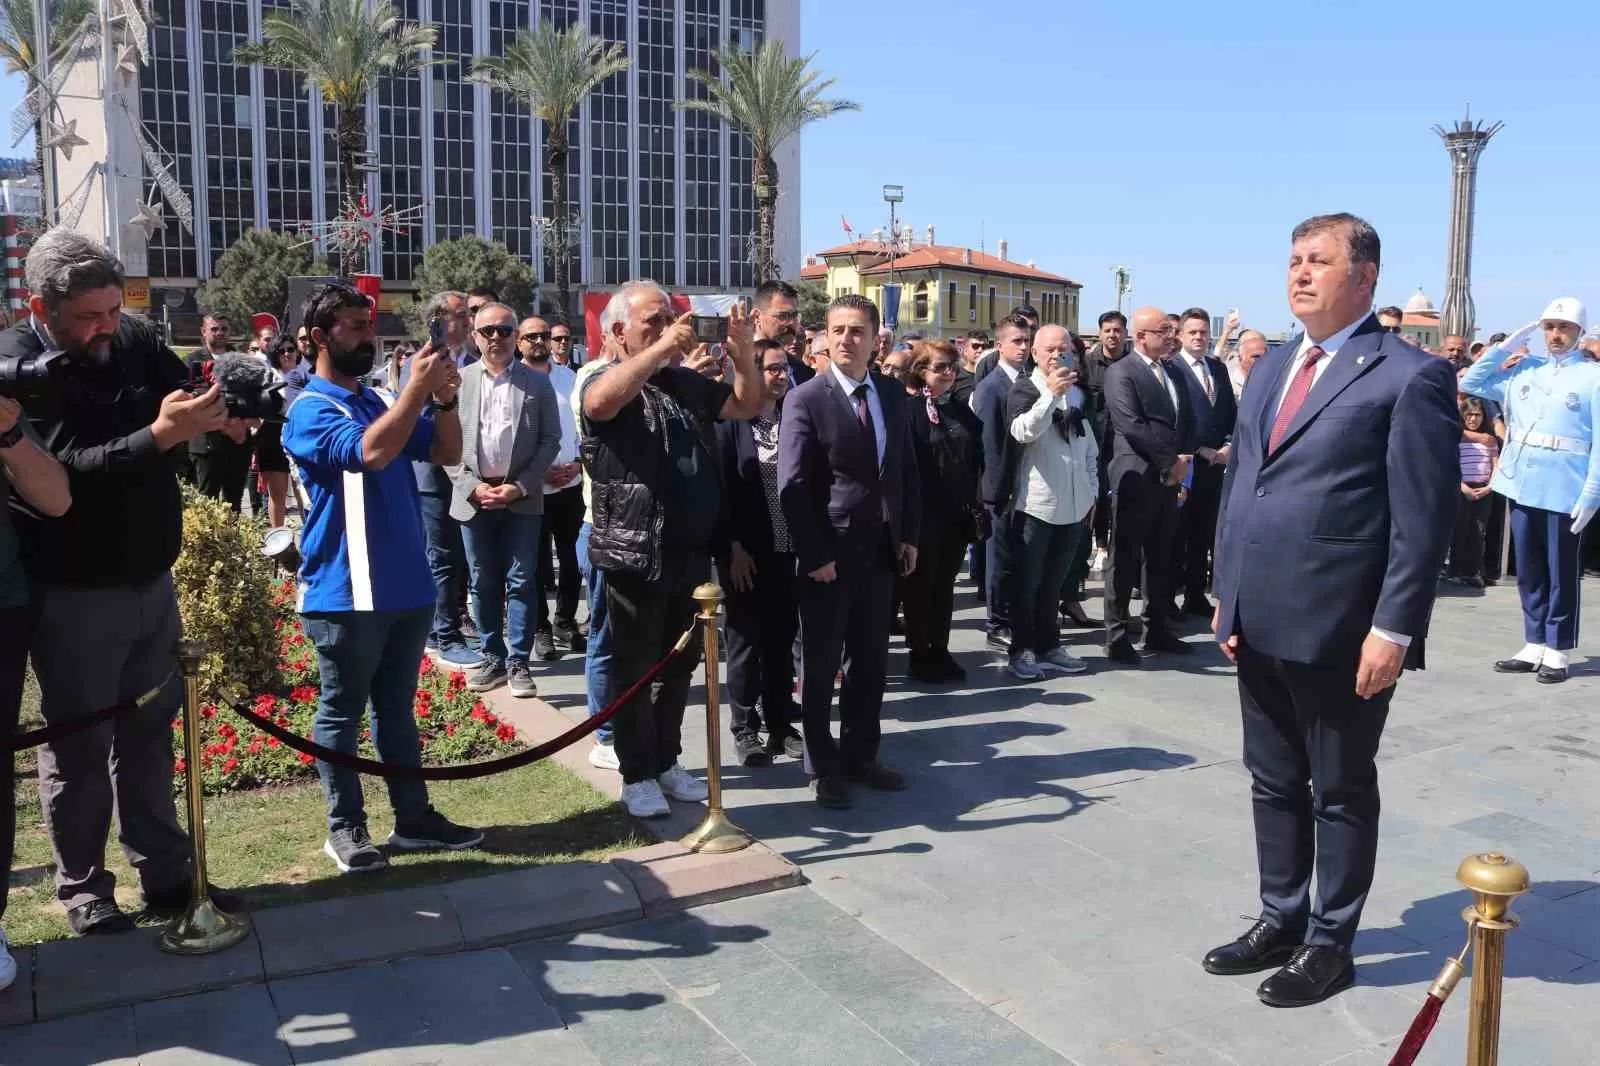 İzmir Büyükşehir Belediye Başkanı seçilen Cemil Tugay, düzenlenen törenle Tunç Soyer'den görevi devraldı.